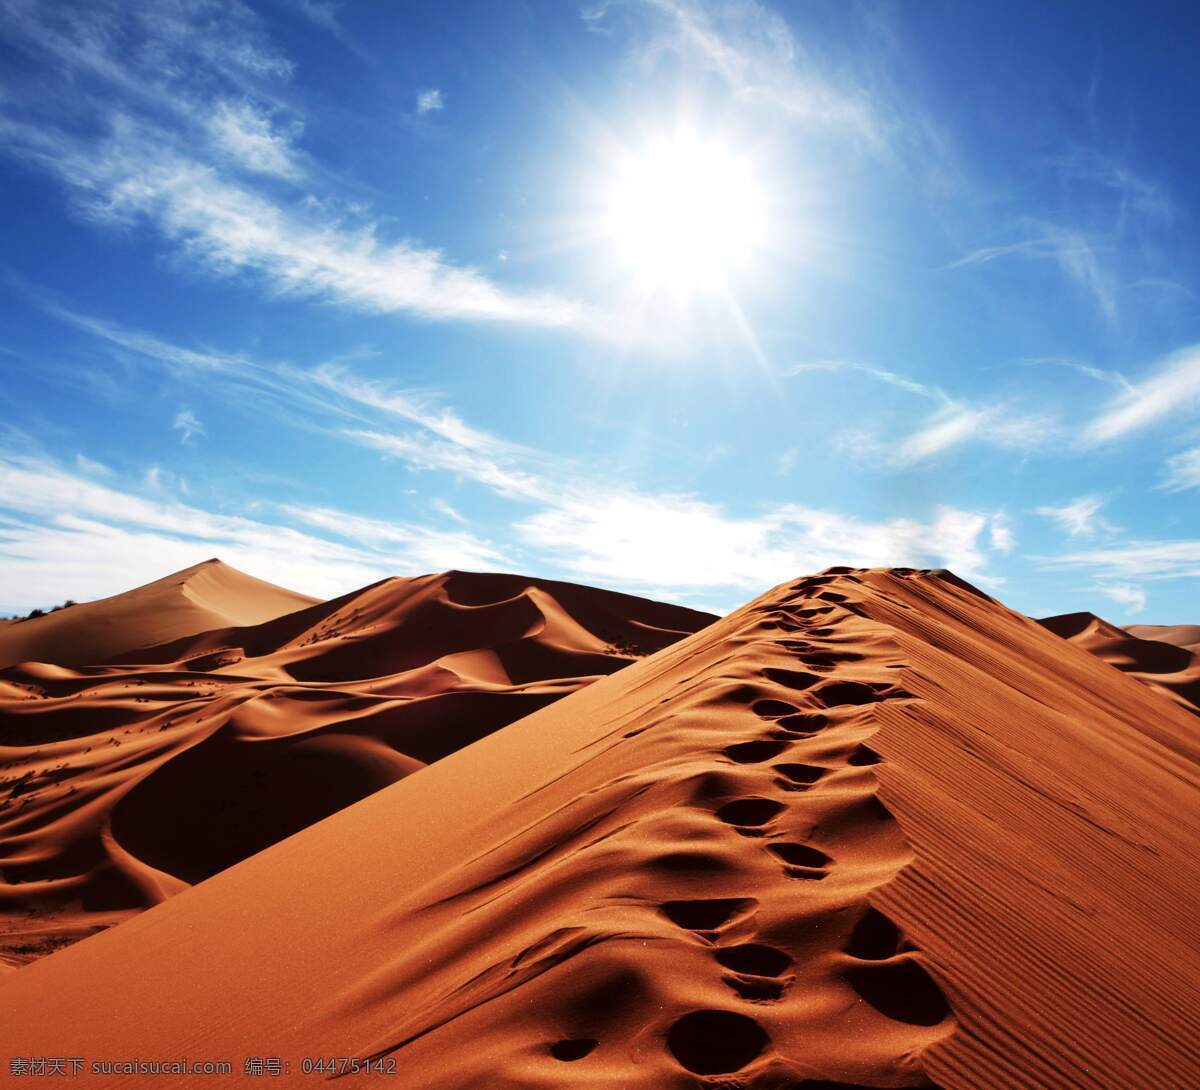 沙漠风光 库布齐沙漠 撒哈拉沙漠 干旱 沙漠 大漠 戈壁 荒漠 非洲 自然风景 自然景观 沙漠图片 自然风光